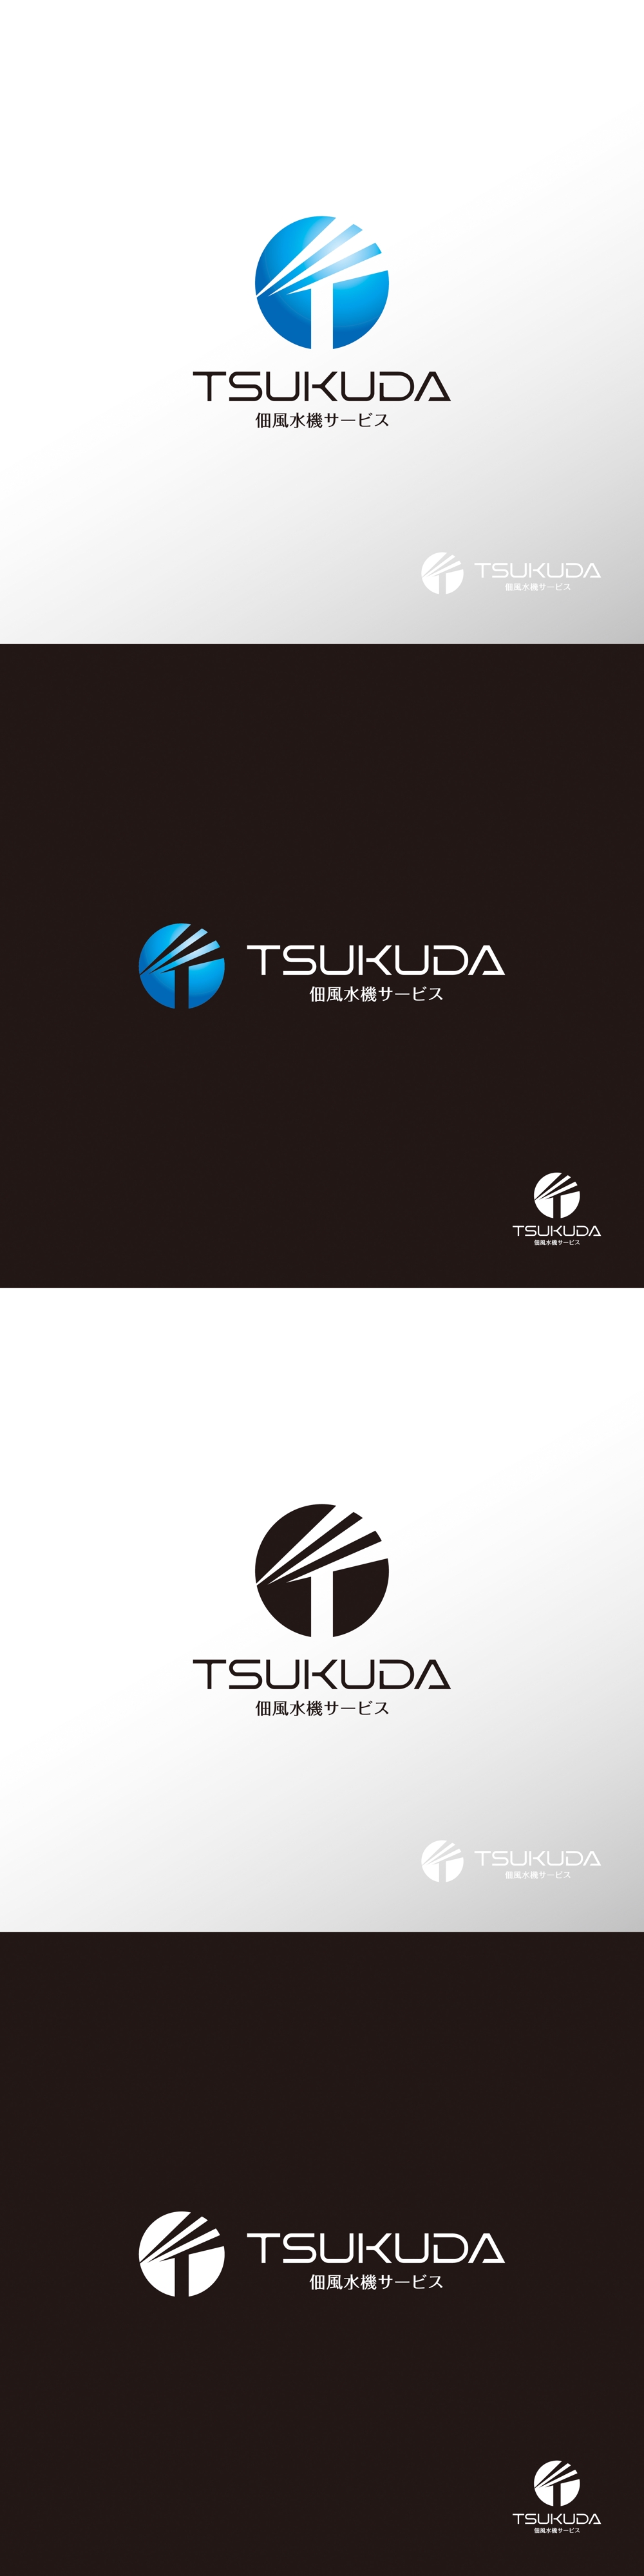 メンテナンス_tsukuda_ロゴA1.jpg